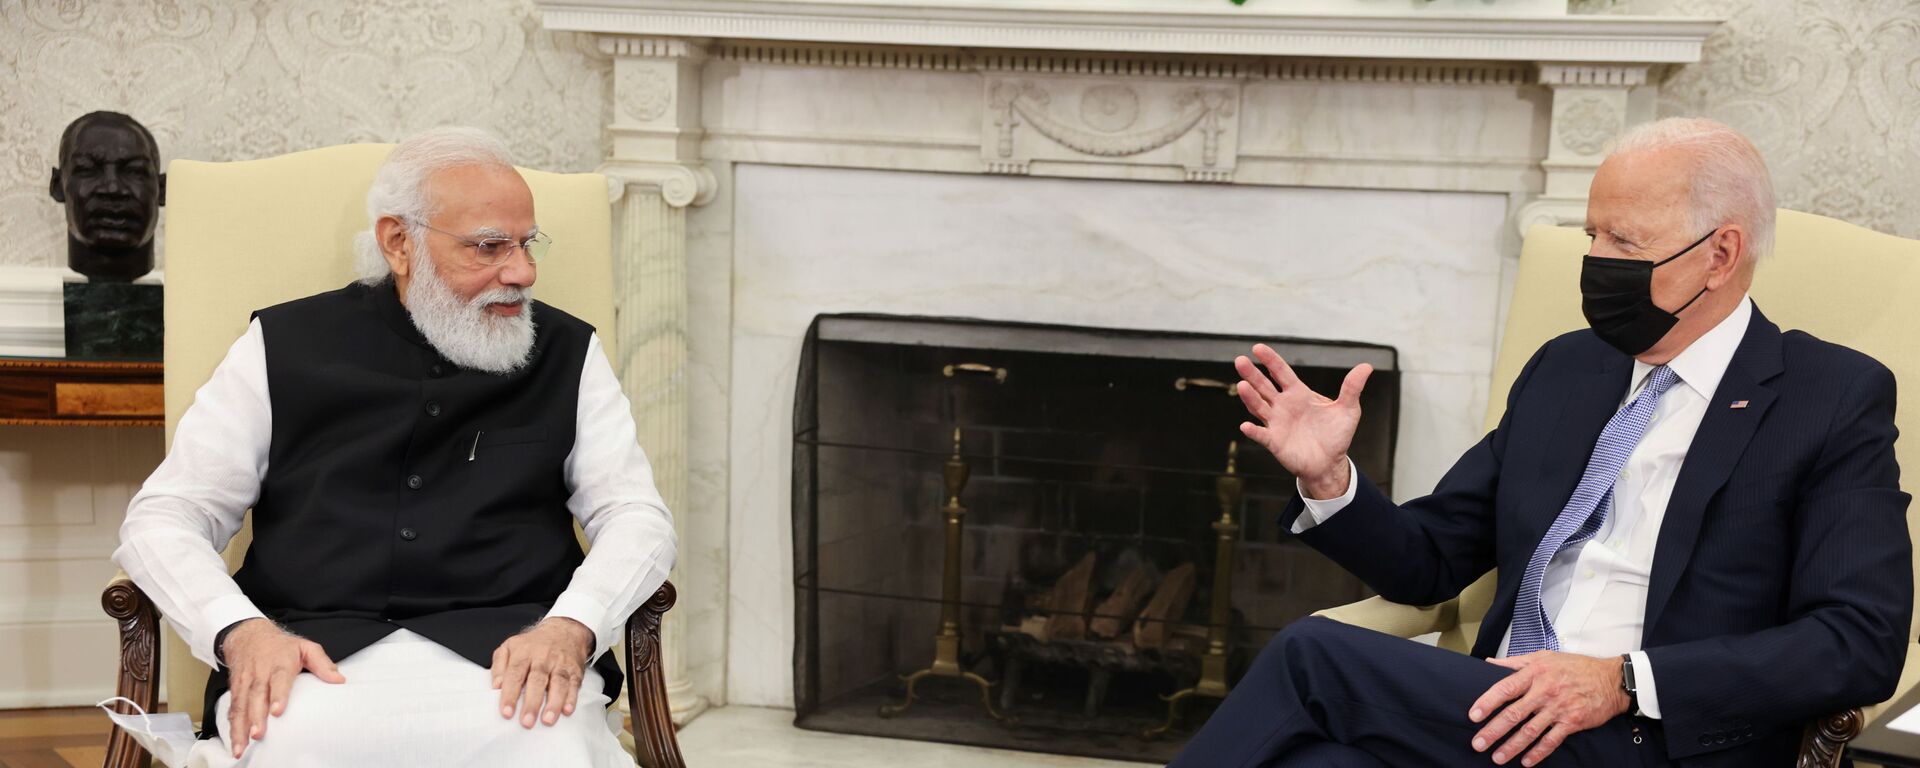 Tổng thống Mỹ Joe Biden gặp Thủ tướng Ấn Độ Narendra Modi tại Phòng Bầu dục Nhà Trắng ở Washington - Sputnik Việt Nam, 1920, 25.09.2021